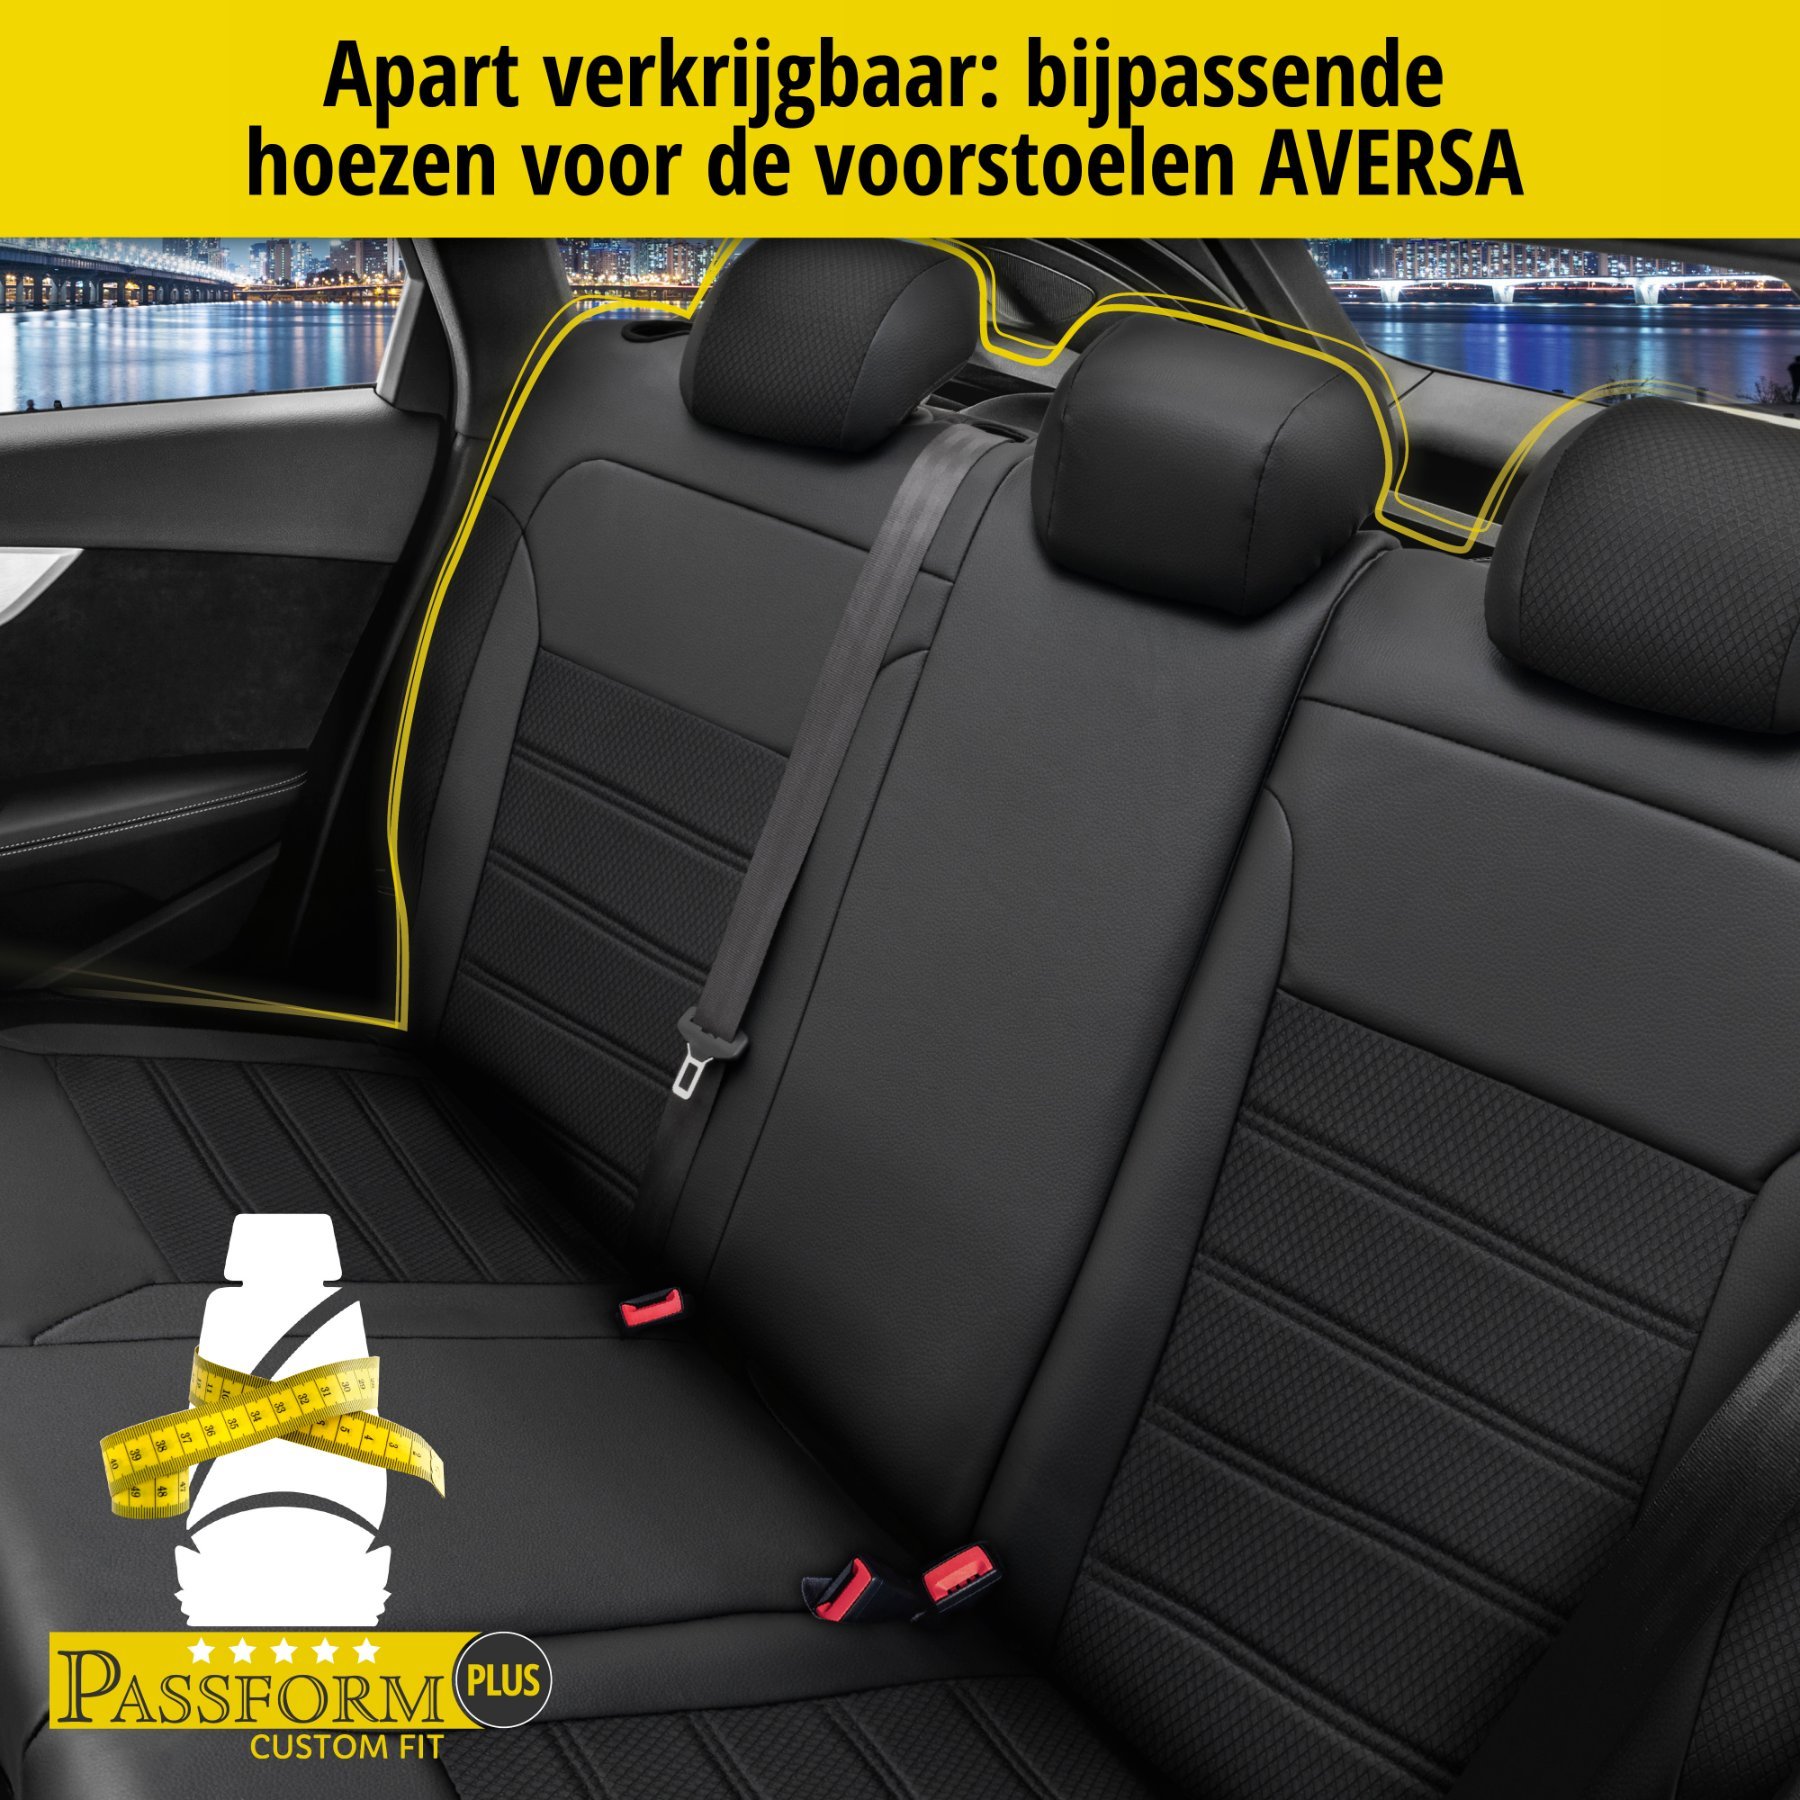 Auto stoelbekleding Aversa geschikt voor Nissan Qashqai II Geländewagen 11/2013-Vandaag, 2 enkele zetelhoezen voor standard zetels